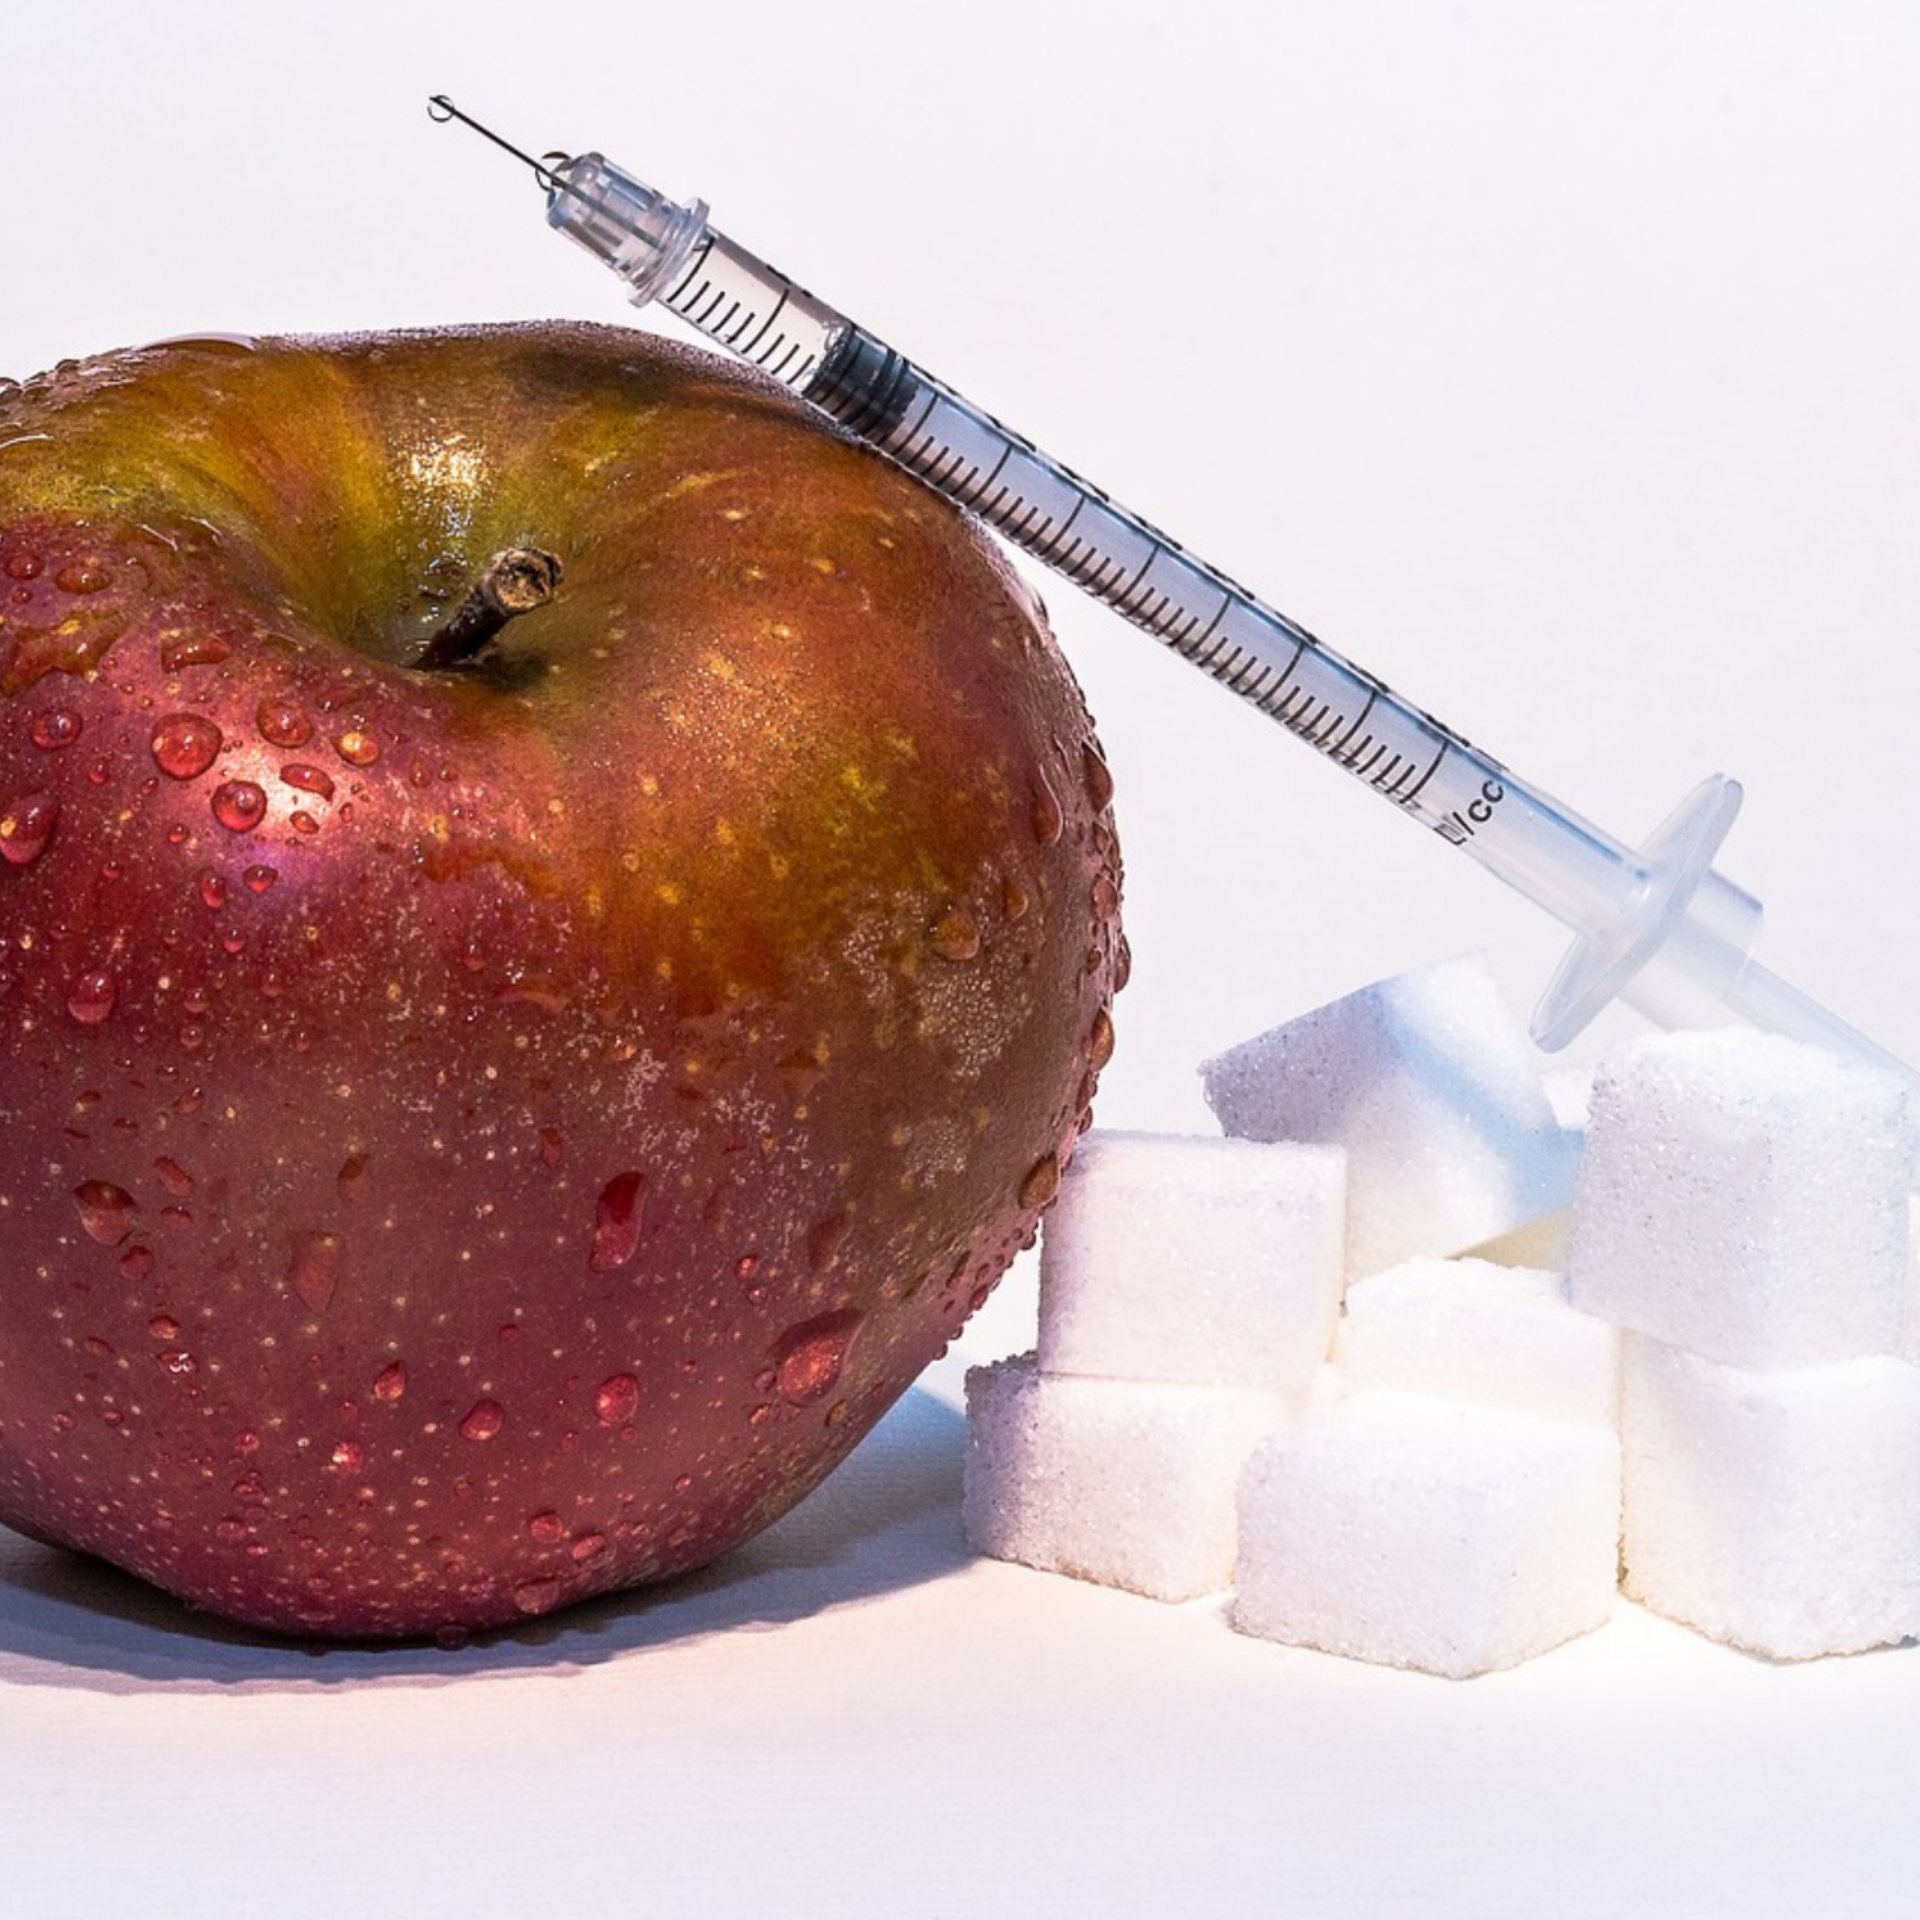 مرض السكرى والفرق بين التفاحة وعصير التفاح